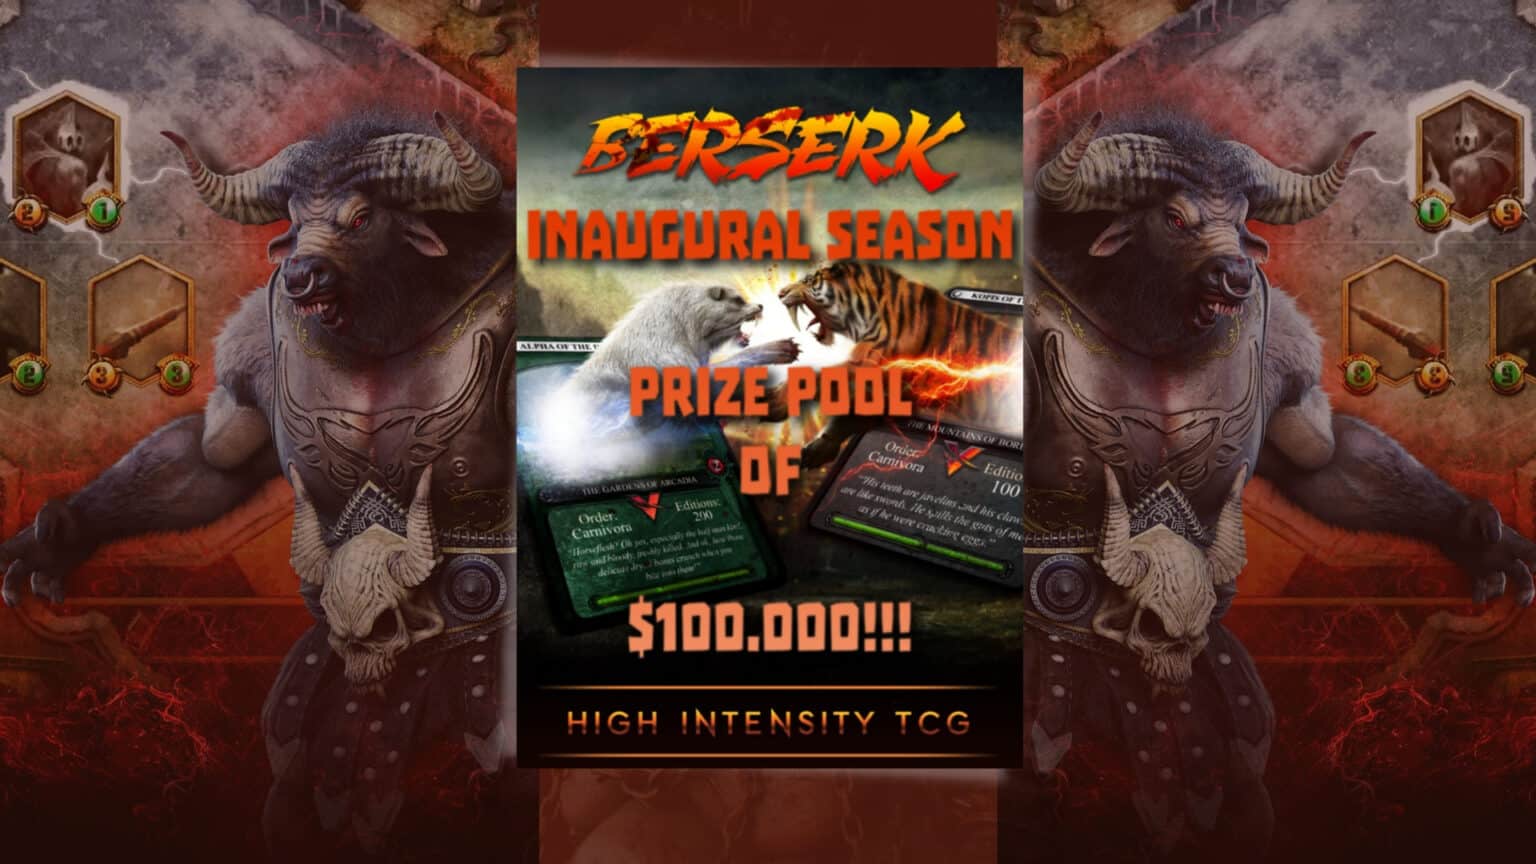 Play to Earn $100,000: Berserk Season One Has Just Started ...